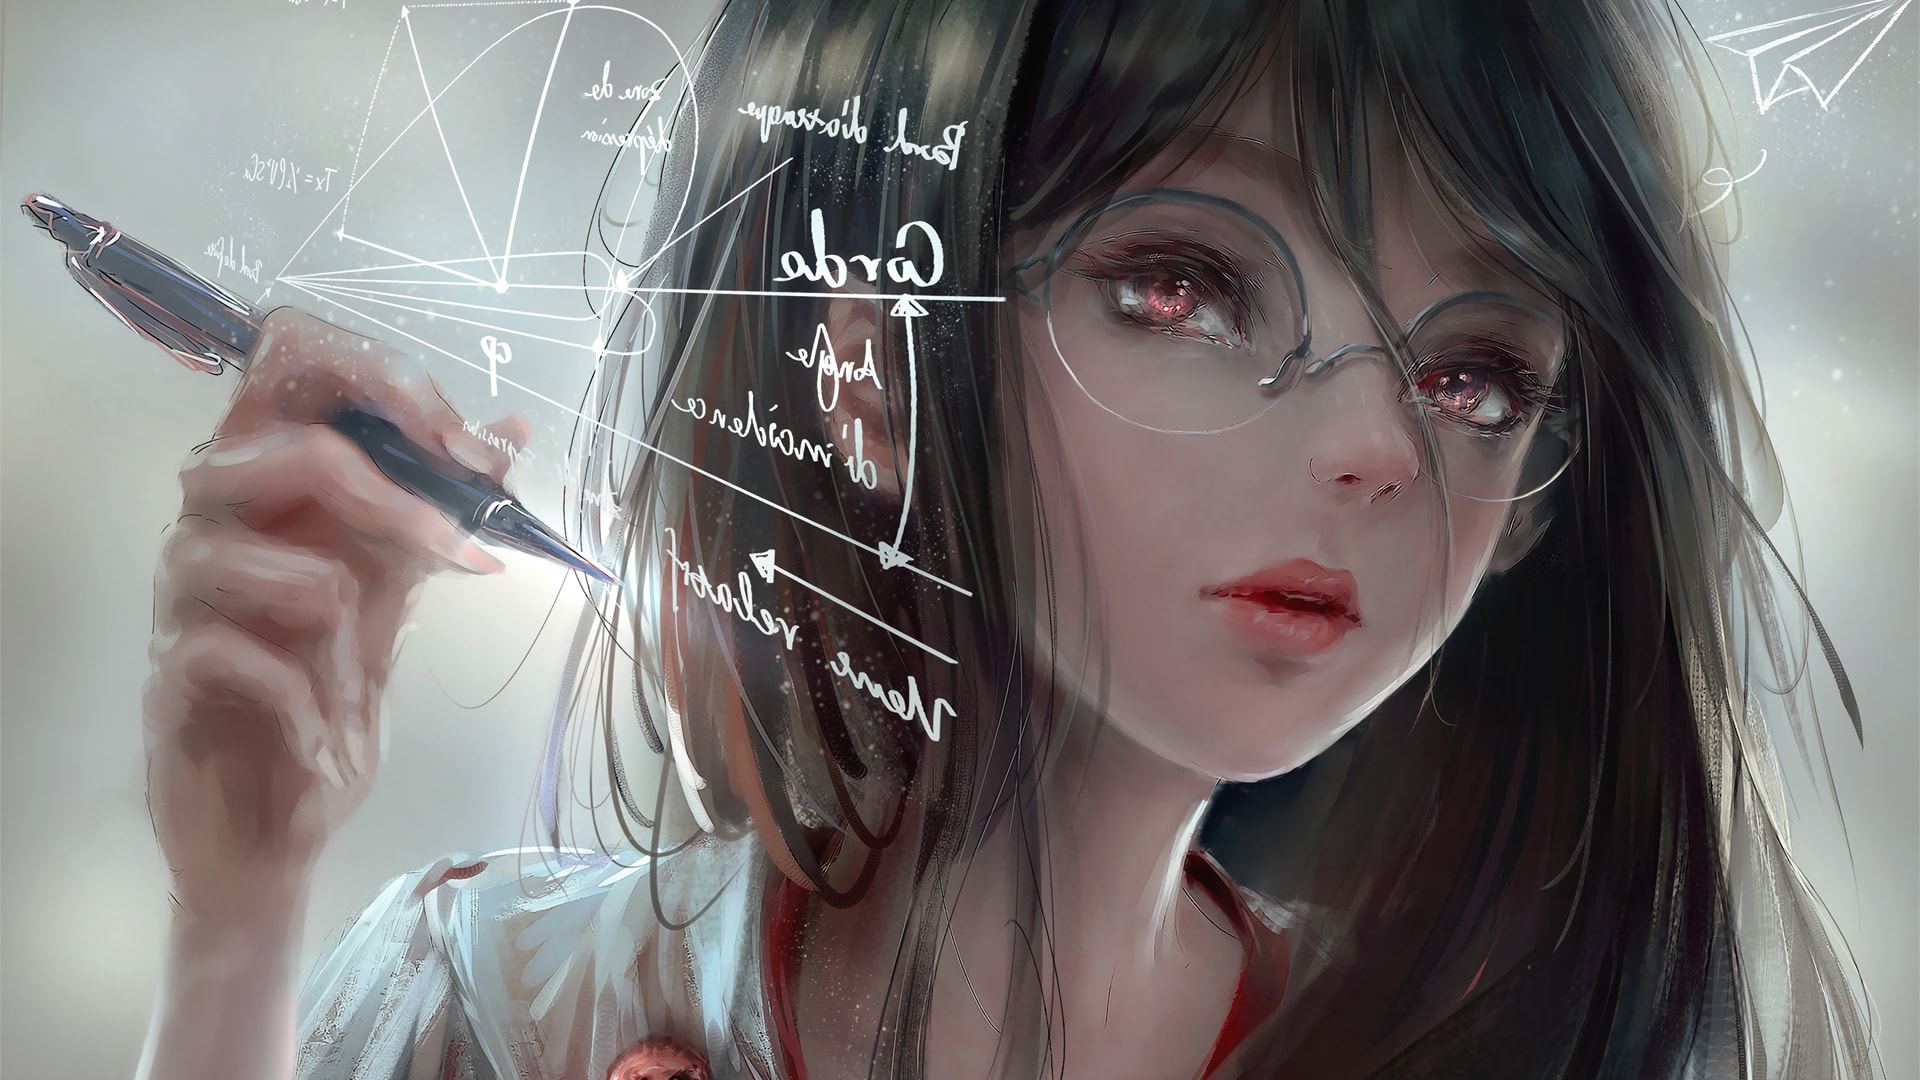 戴眼镜的女工程师演算板绘厚涂画风格